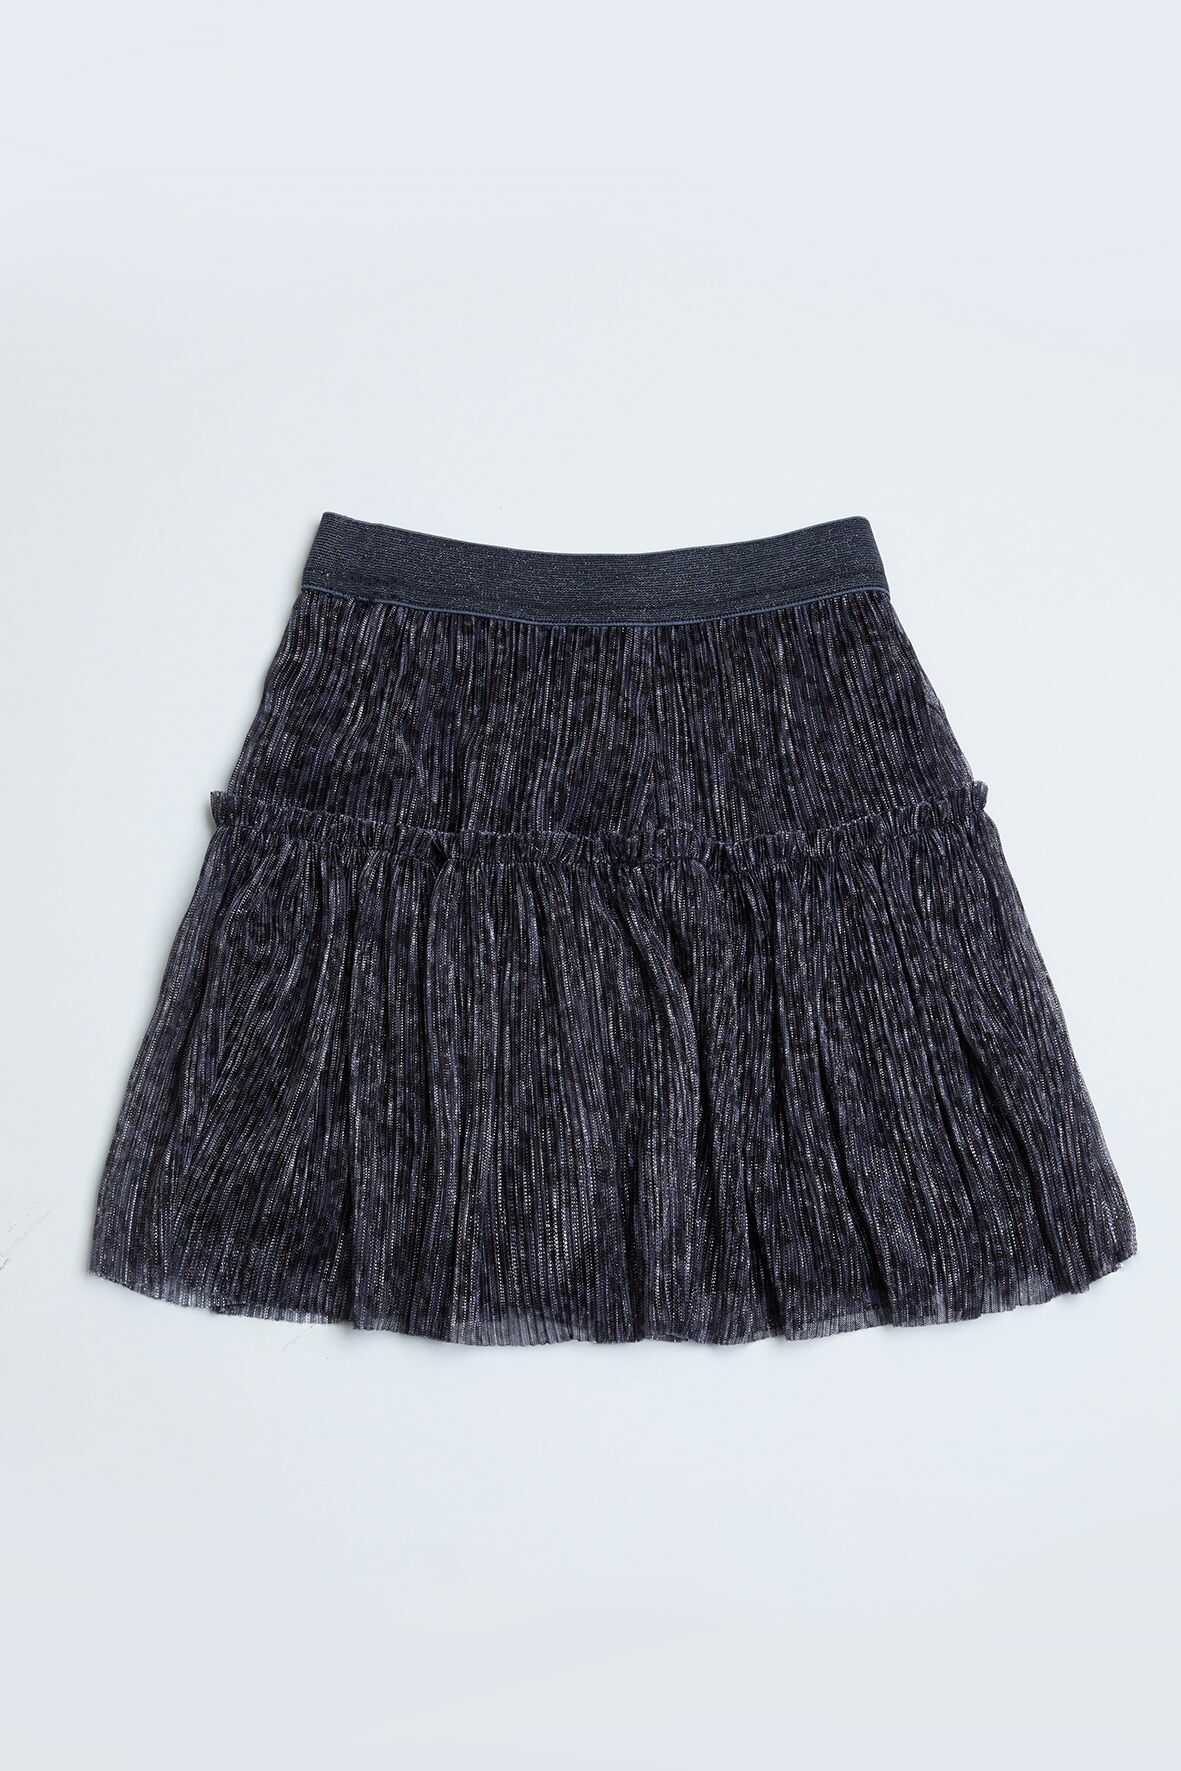 Tiulowa, czarna spódniczka dla dziewczynki - Limited Edition